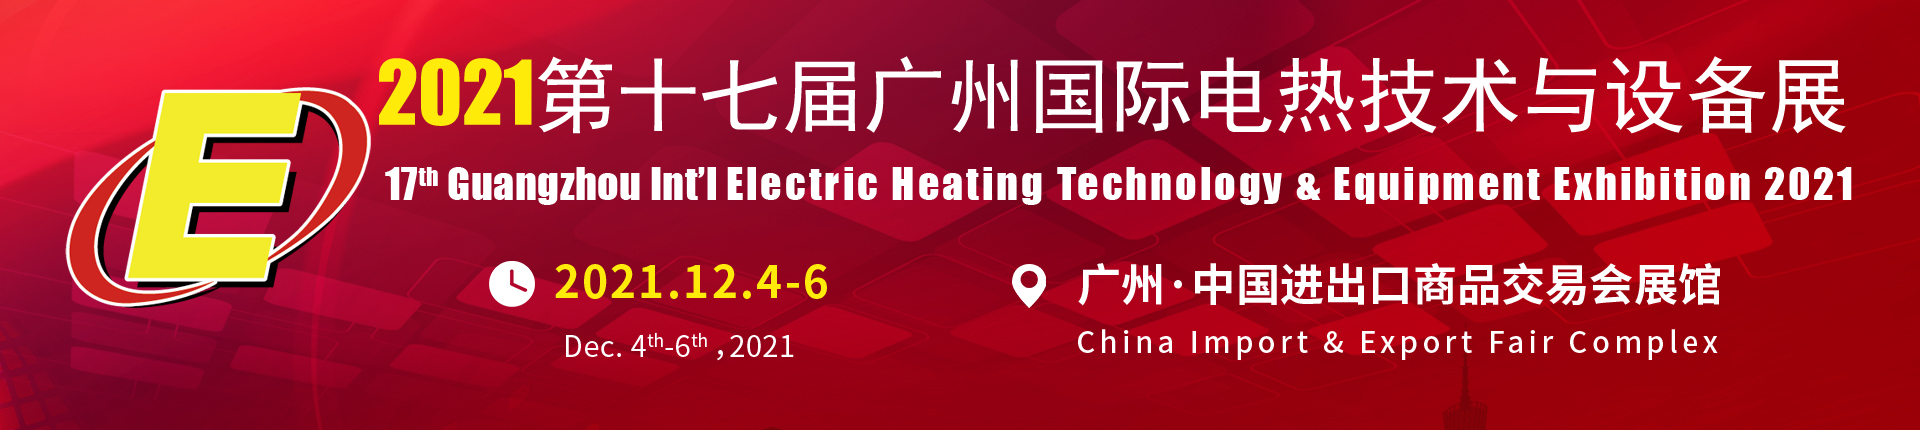 2021第十七届广州国际电热技术与设备展